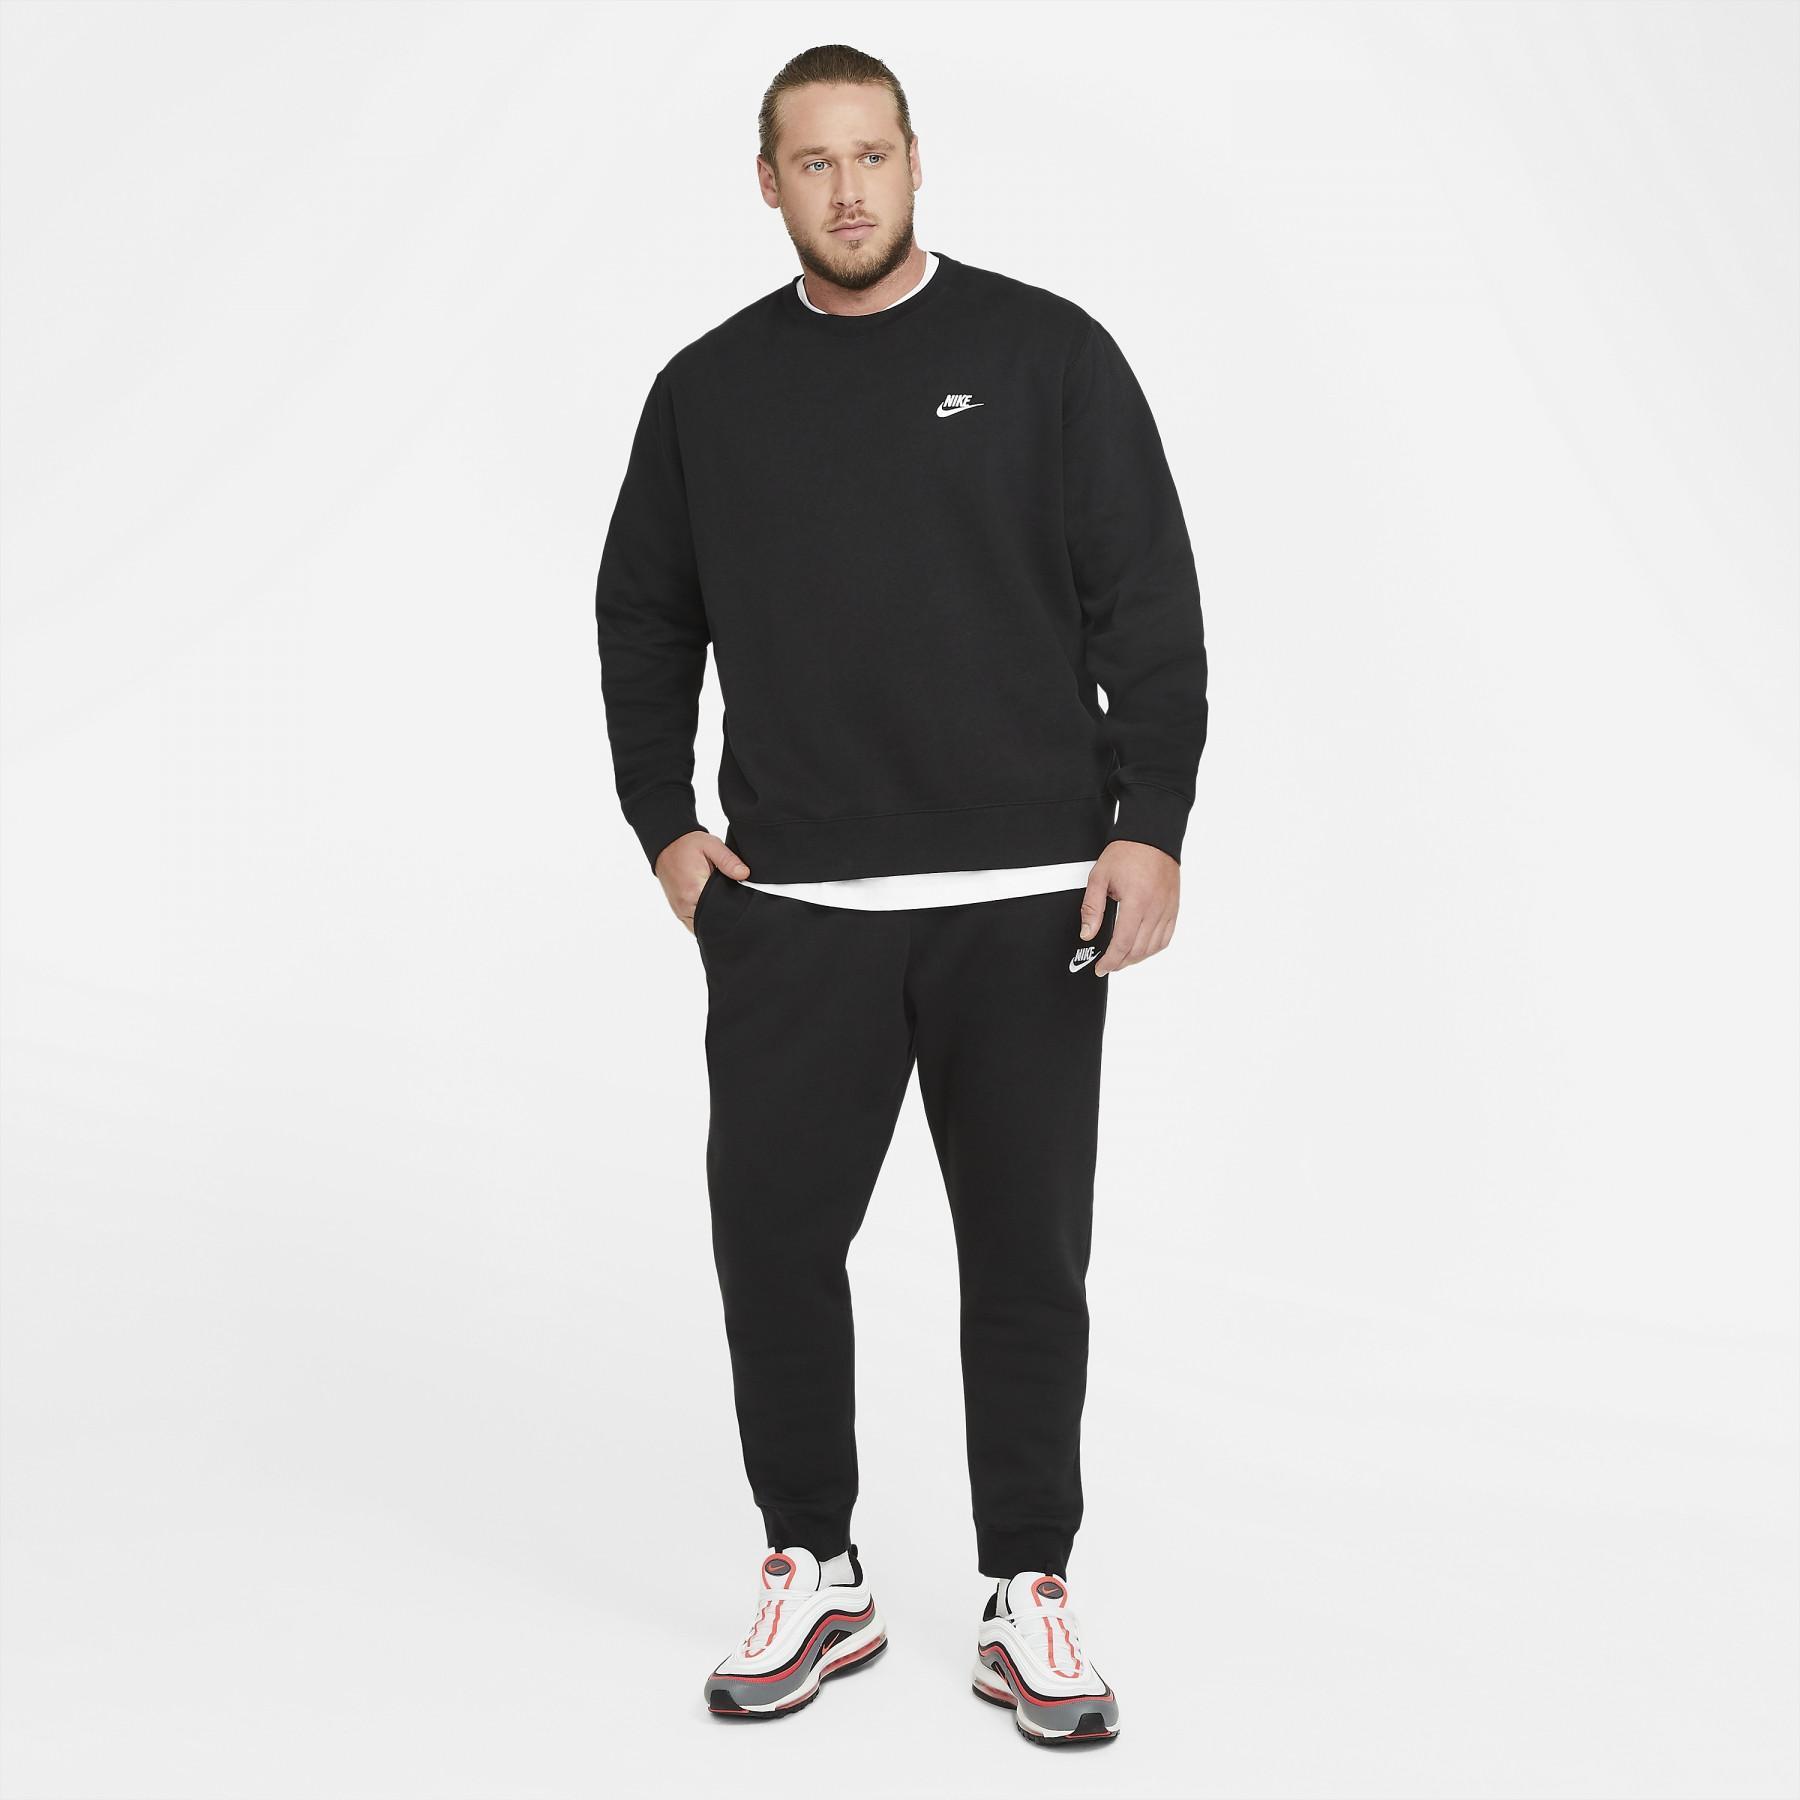 Sweatshirt Nike Sportswear Club Fleece - Nike - Brands - Handball wear